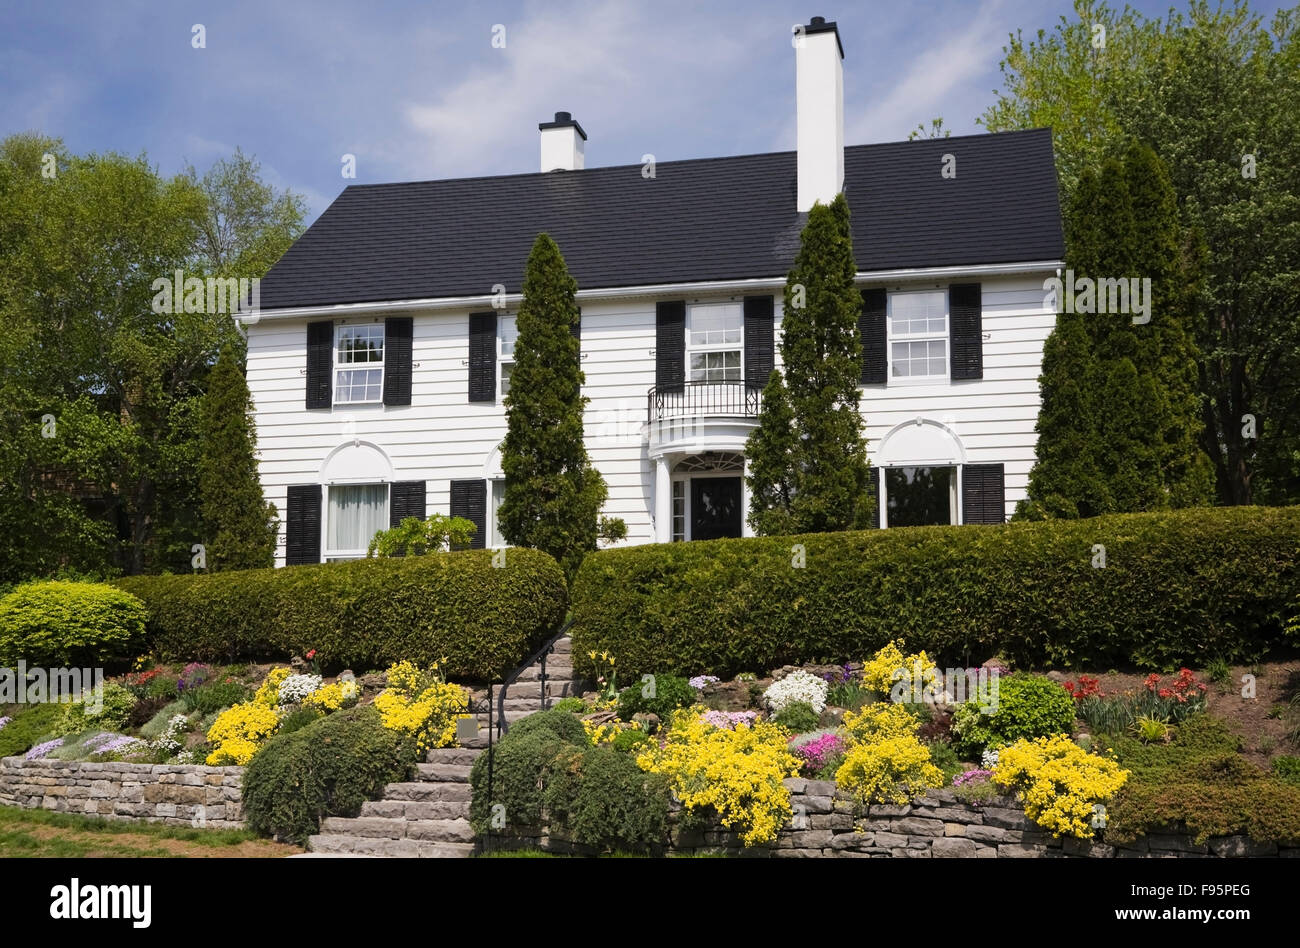 Bordo in rilievo con vari arbusti e fiori perenni in primavera davanti a un bianco clapboard cottage in stile residenziale Foto Stock